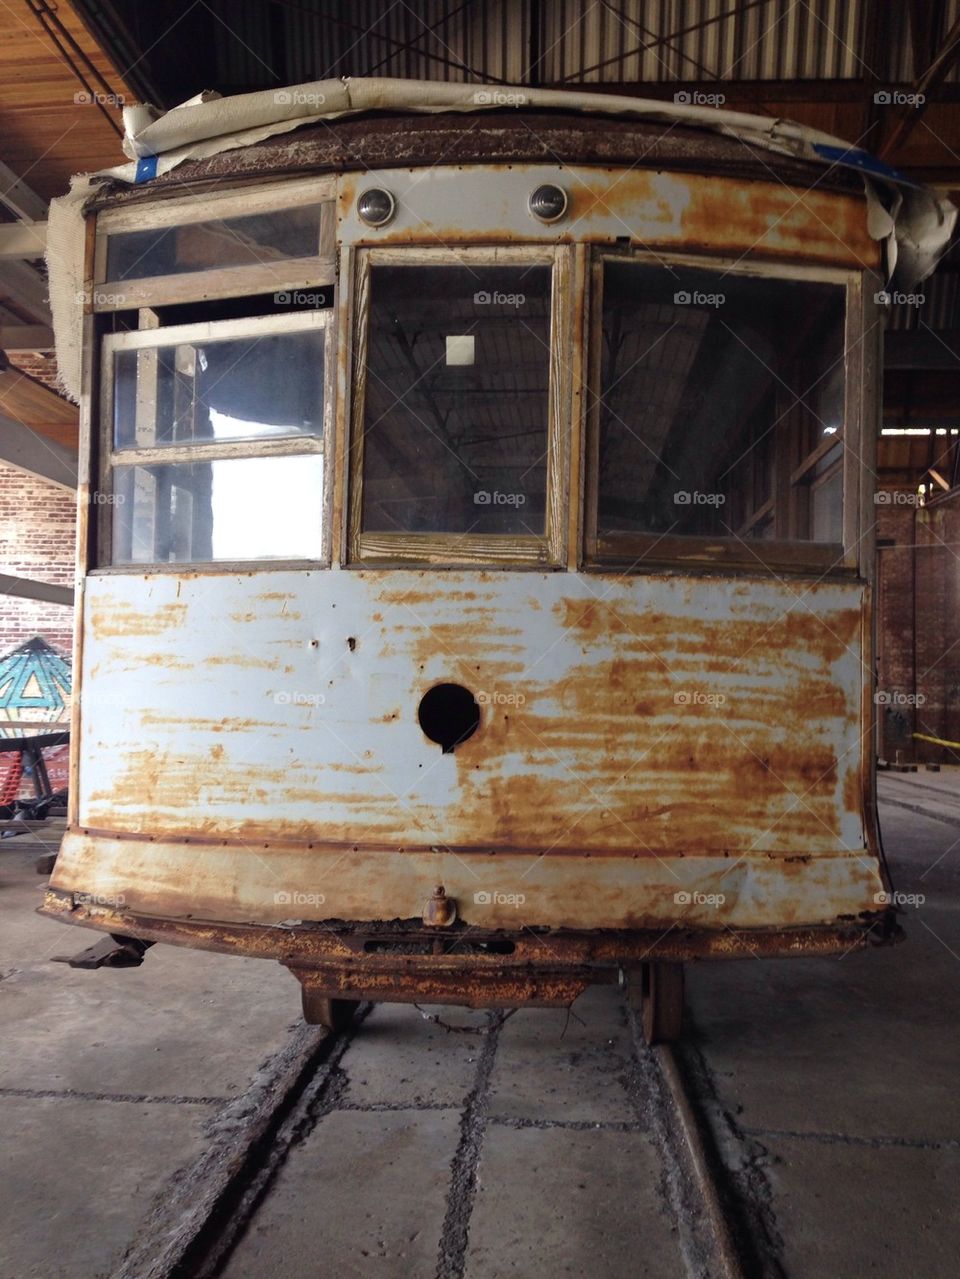 Rusty trolley